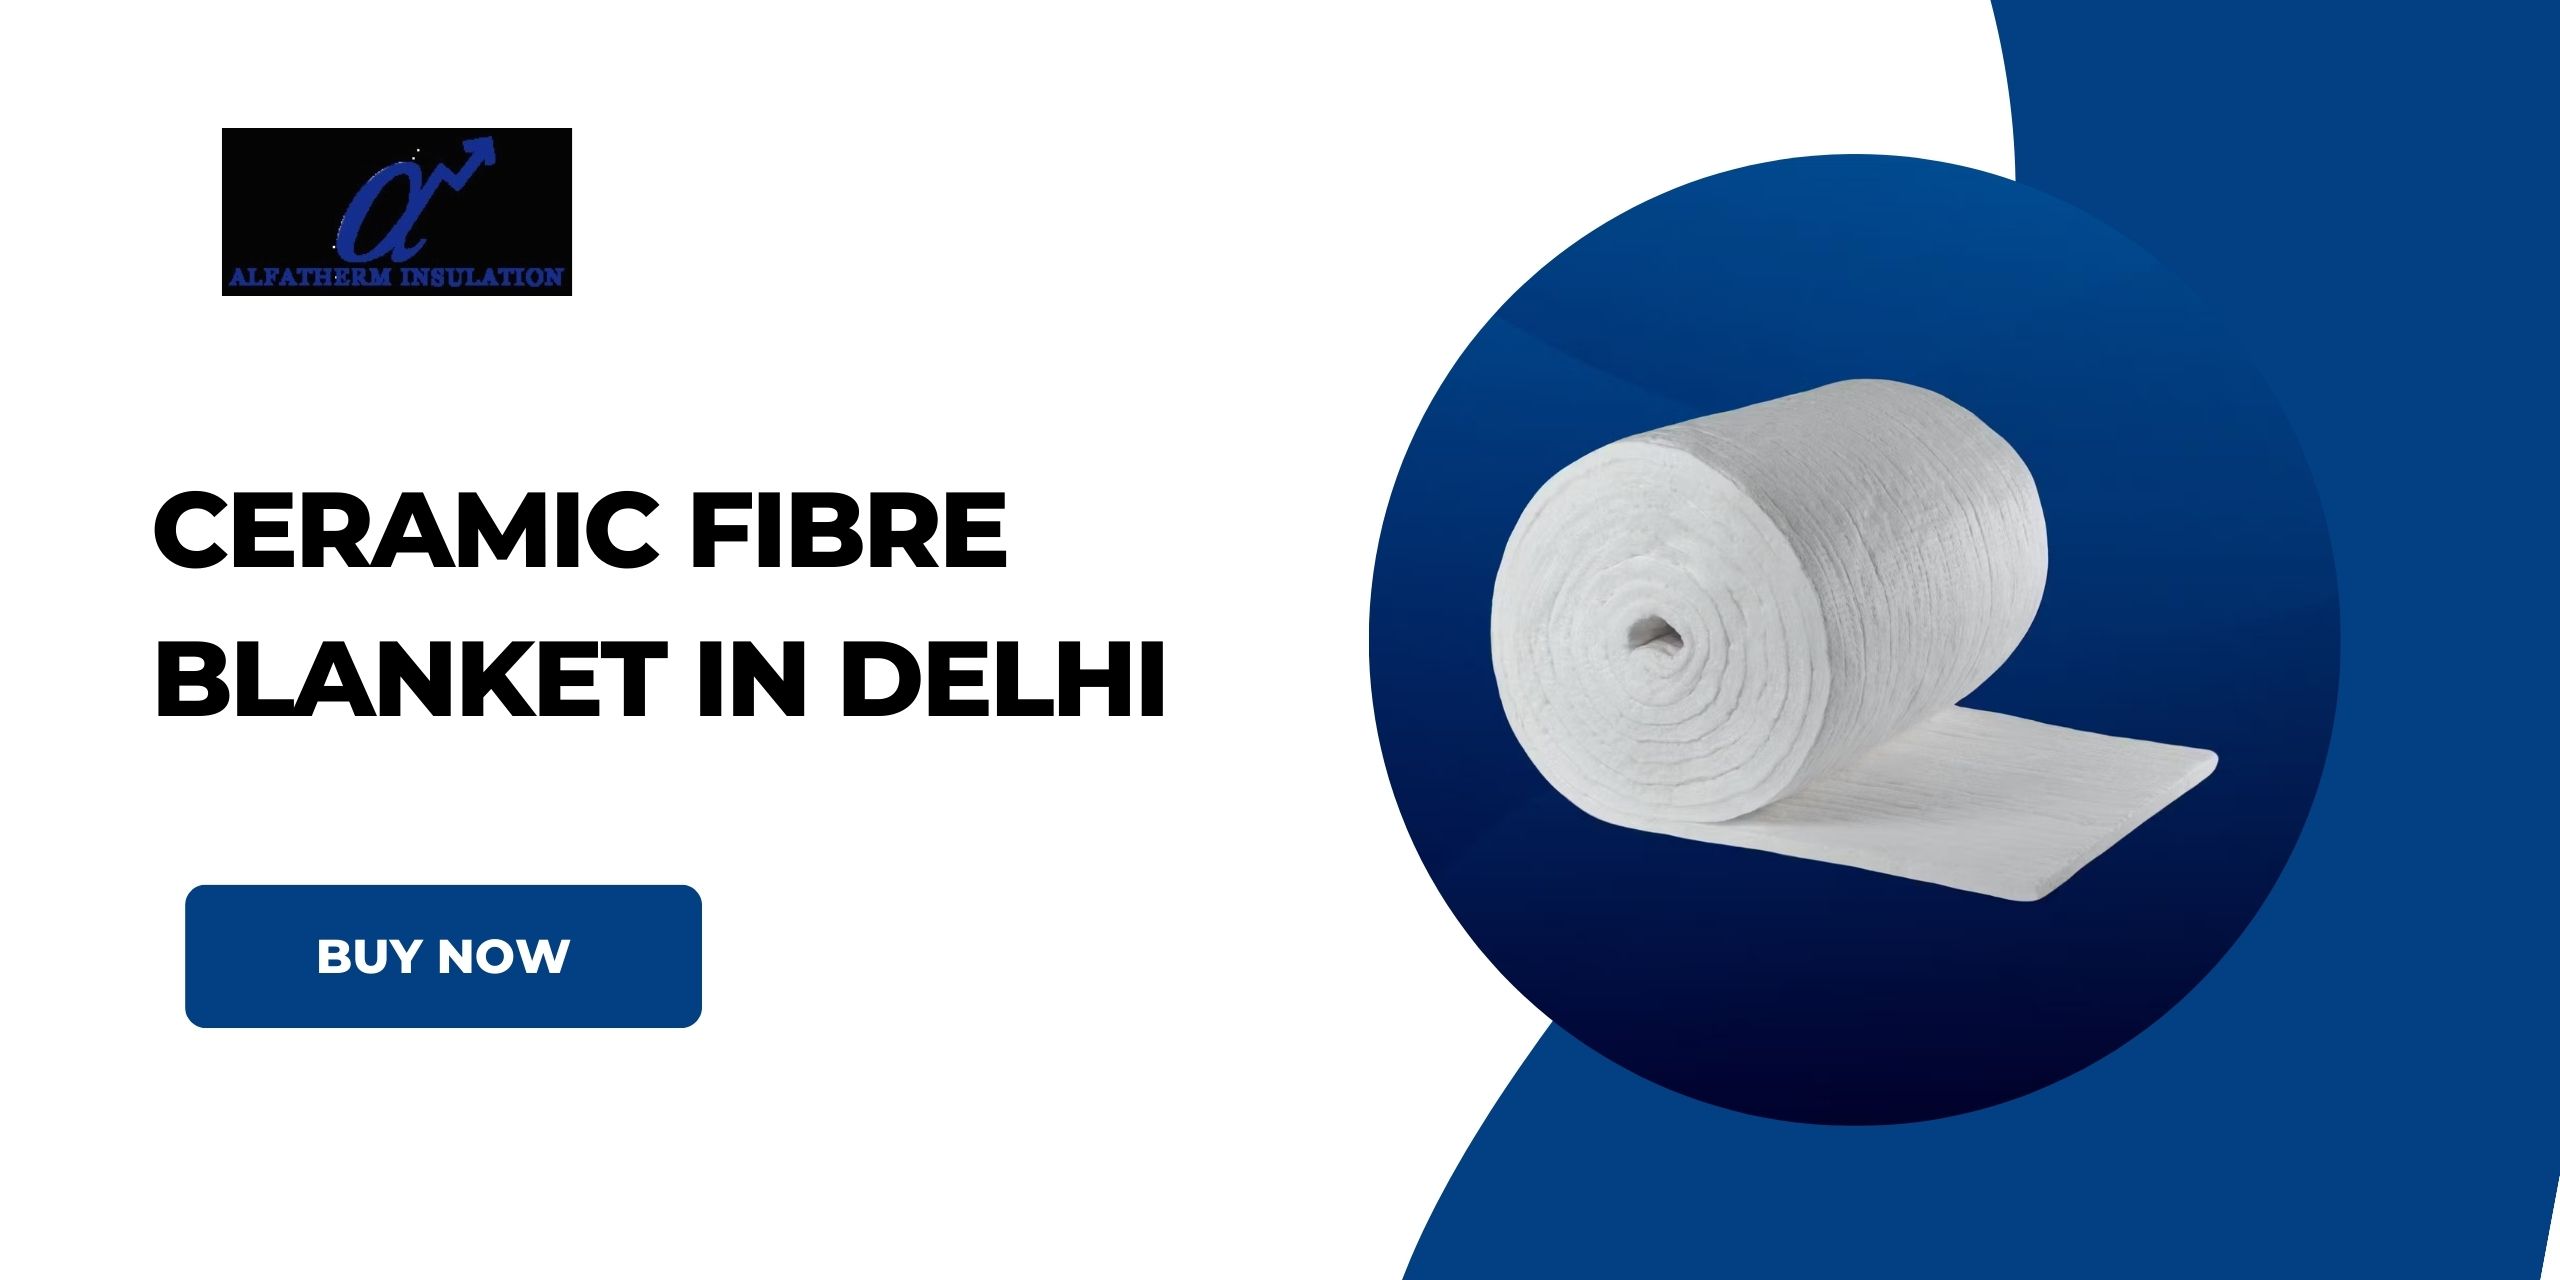 Ceramic Fibre Blanket in Delhi